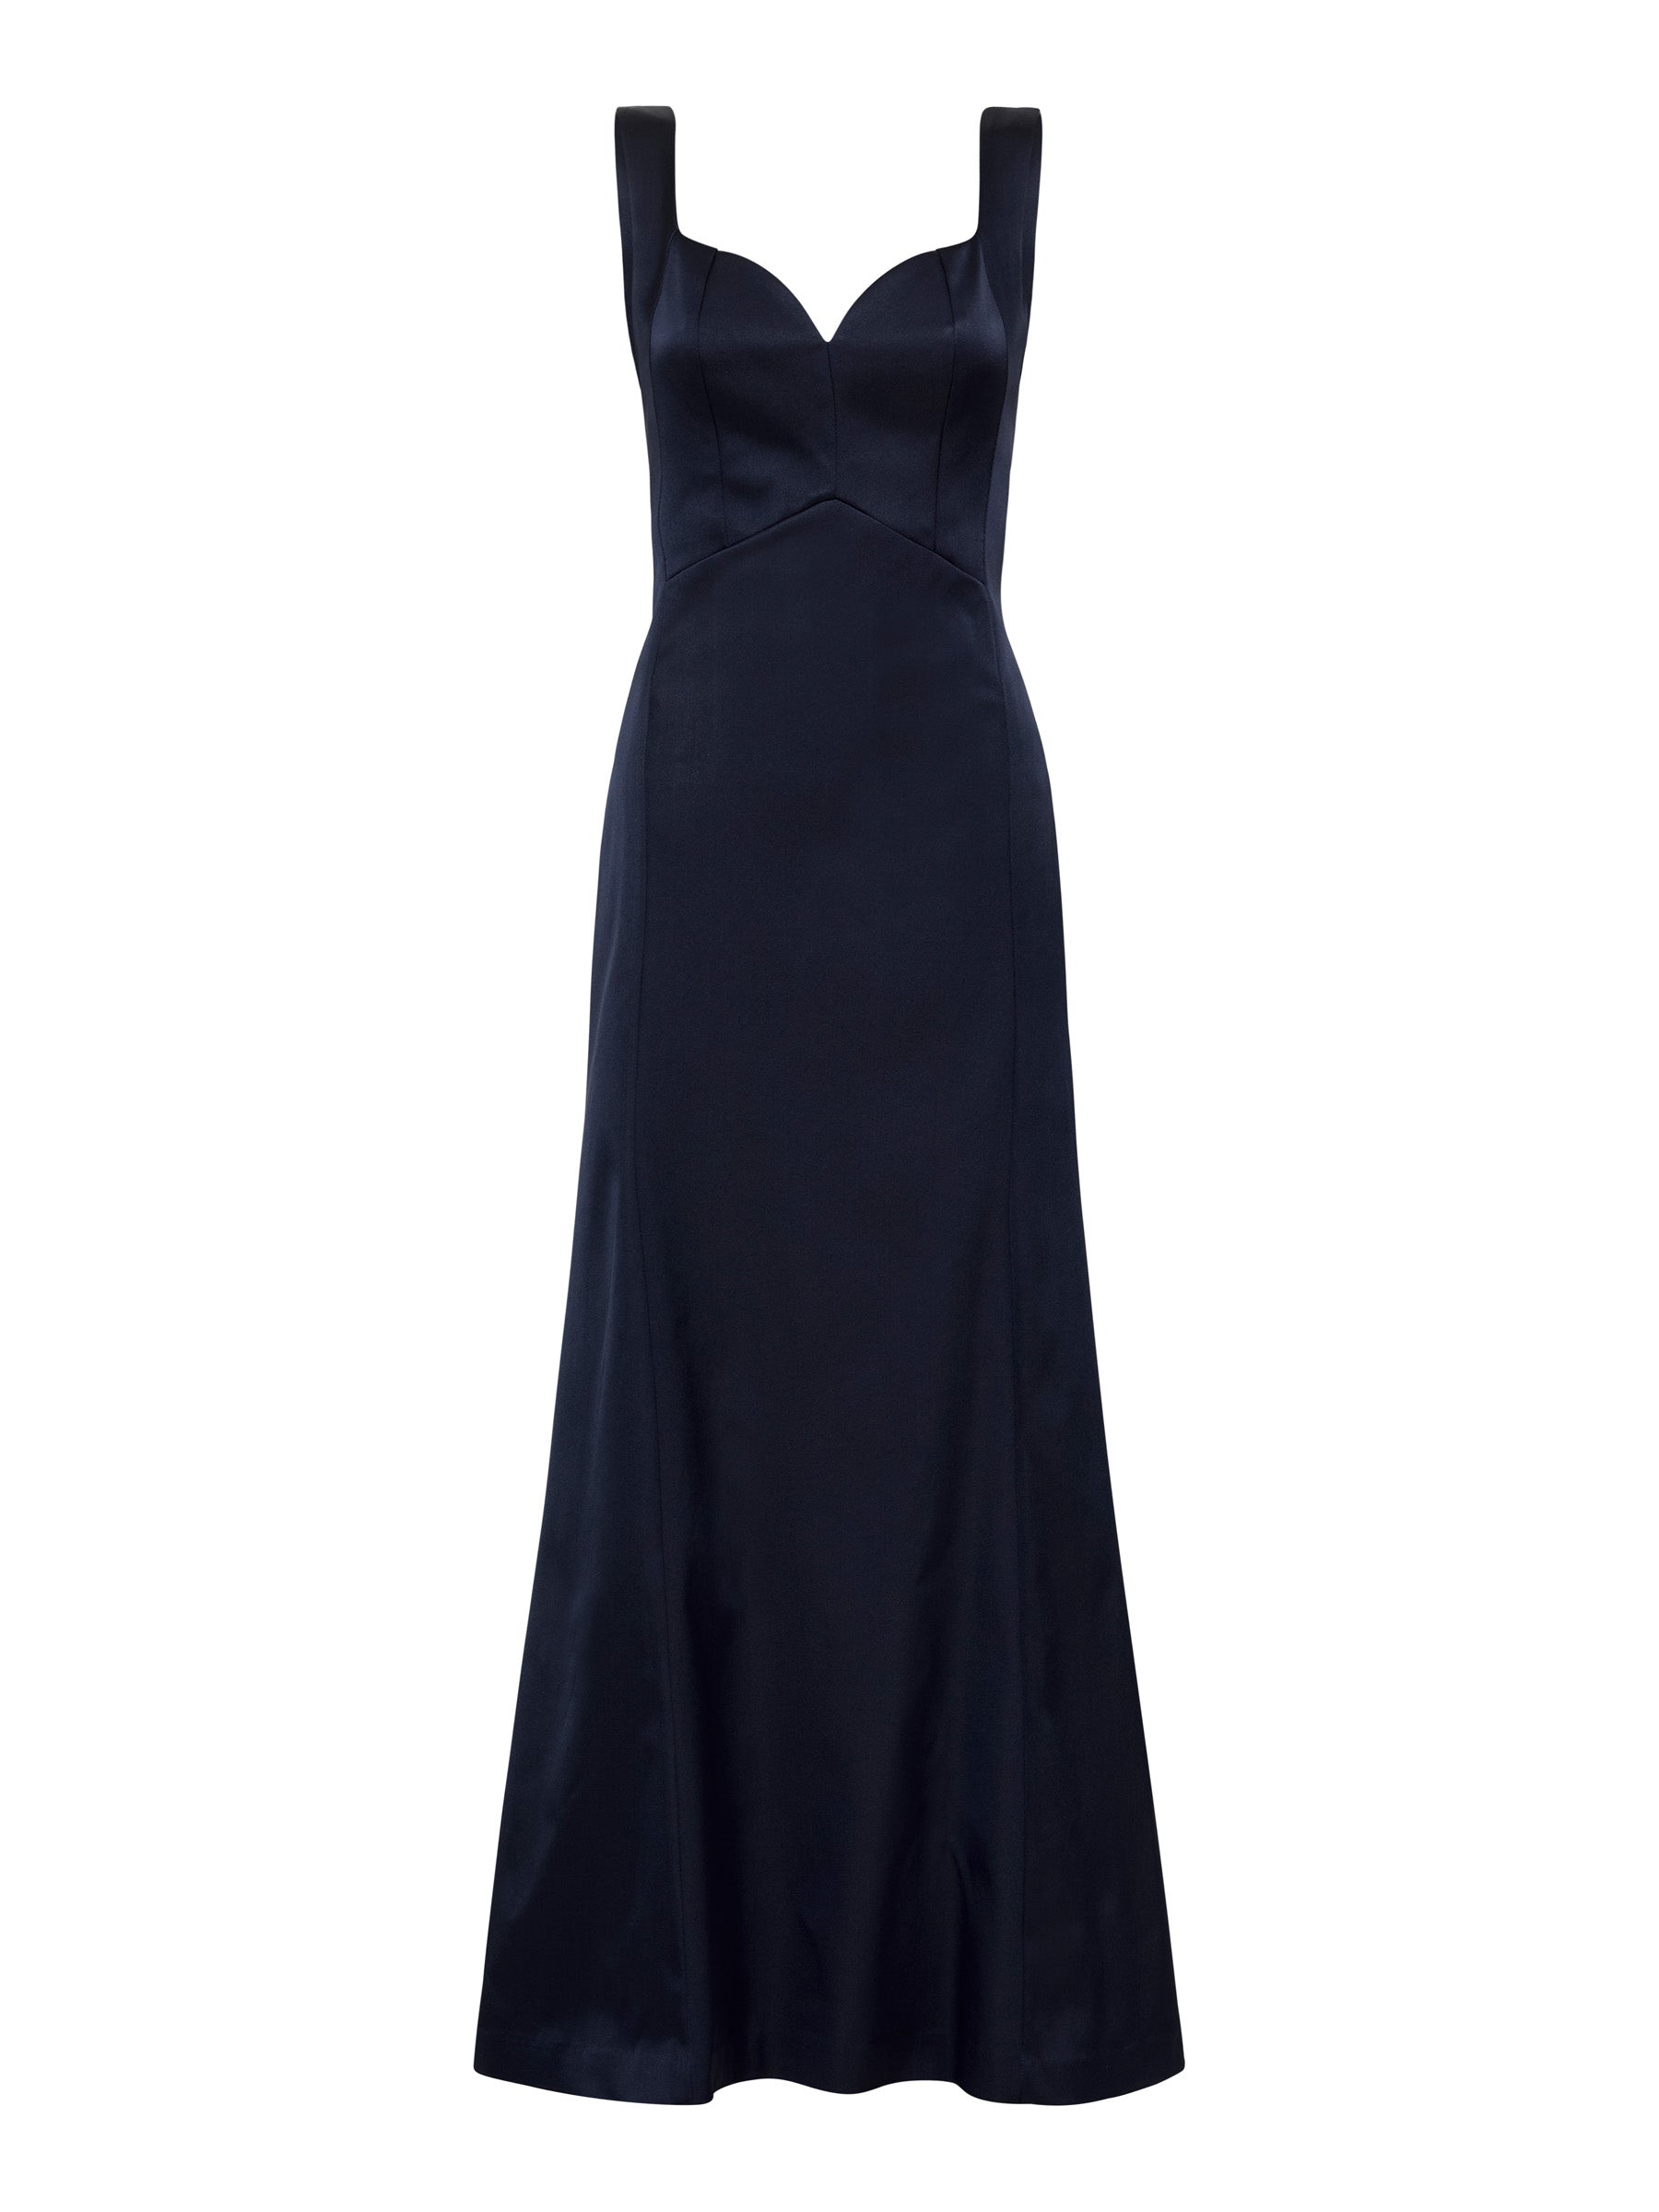 Aurora Gown - Navy (Size 8 + 10 Only)